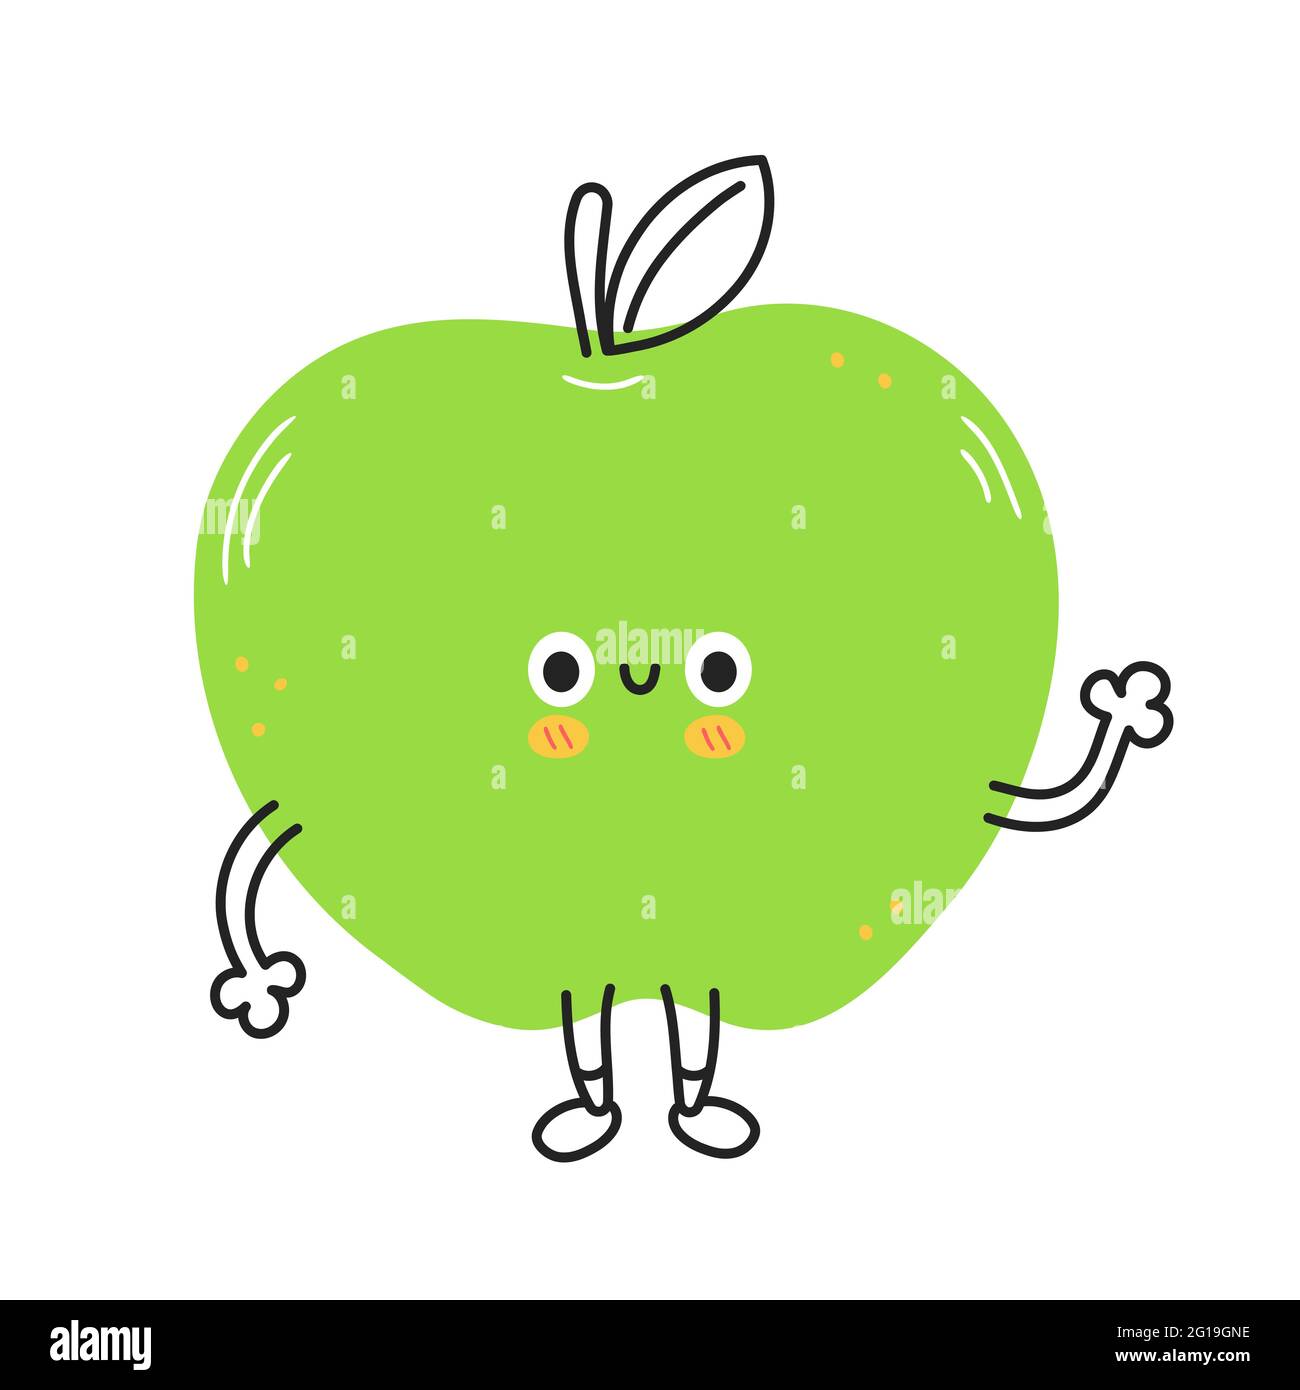 Carino divertente frutta di mela. Vettore disegnata a mano cartone animato kawaii doodle icona illustrazione carattere. Concetto di personaggio cartoon mascotte di frutta Apple. Isolato su sfondo bianco Illustrazione Vettoriale